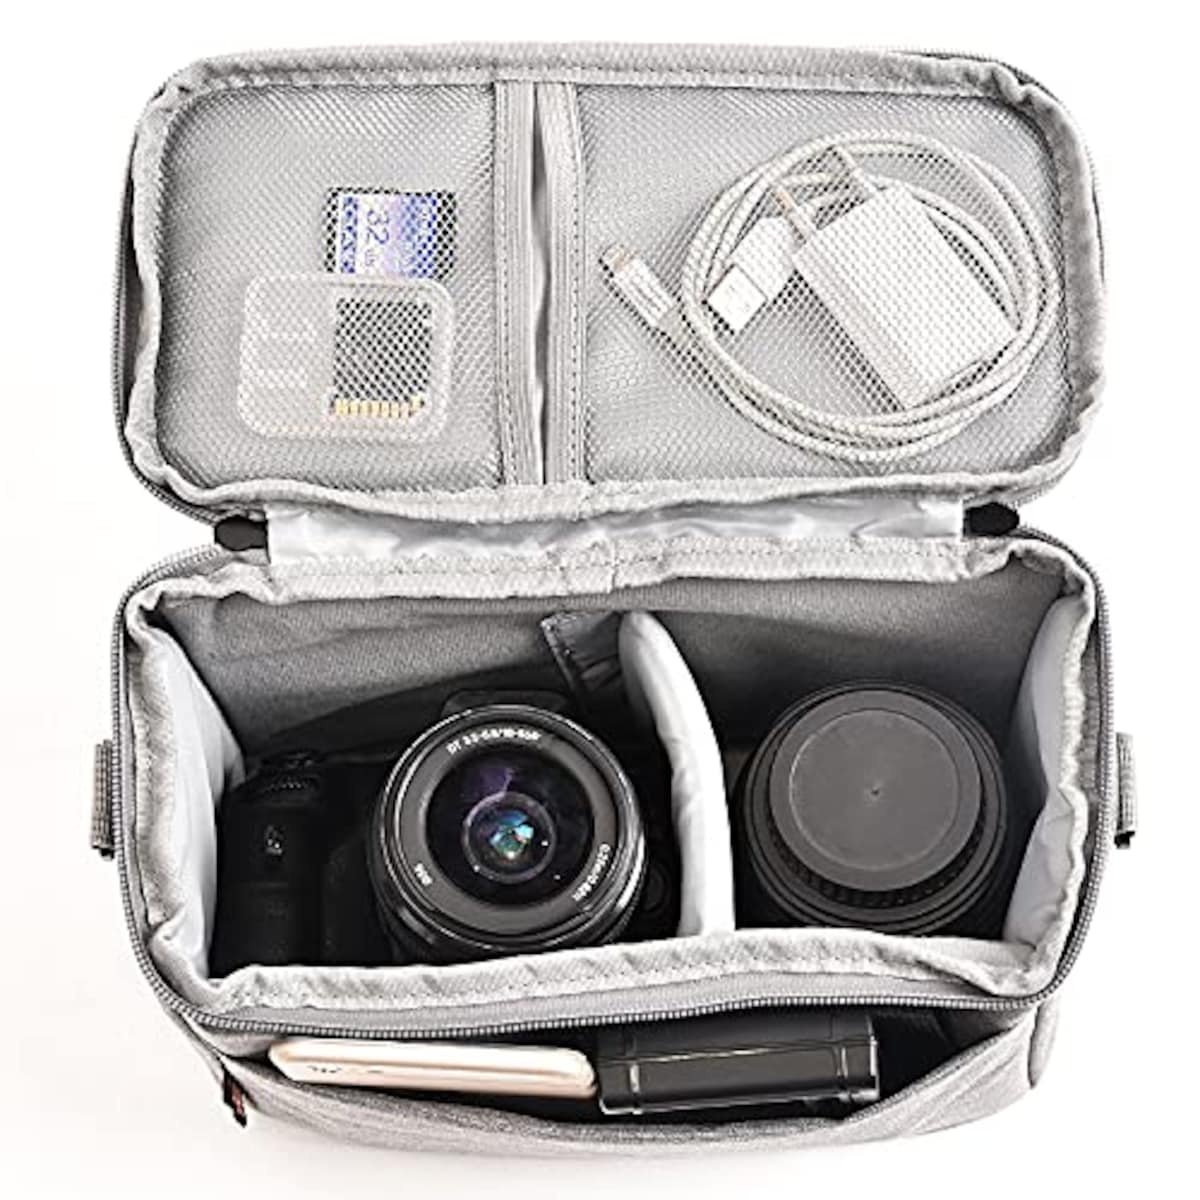  FOSOTO 一眼レフカメラバッグ カメラ収納用ショルダーケース Canon EOS M50 PowerShot SX420 SX430 SX70 SX50 SX30IS Sony a6400 RX10 DSC-H300 Nikon Coolpix P900などに対応機種 防水ナイロン製 レインカバー付き おしゃれ日常カバン カメラ収納（グレー）画像3 